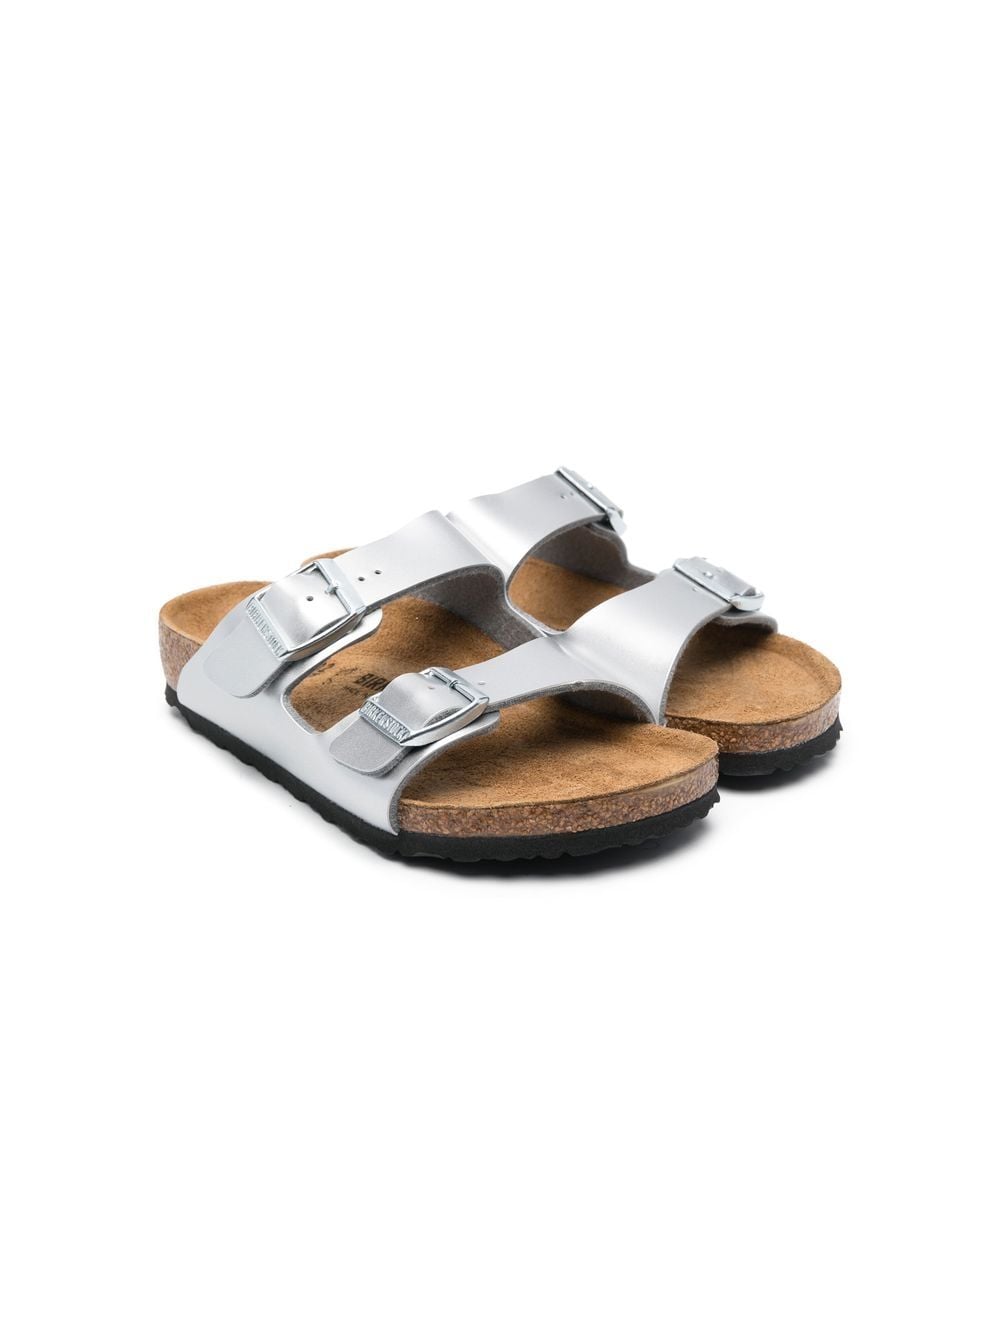 Birkenstock Kids Arizona metallic sandals - Grey von Birkenstock Kids